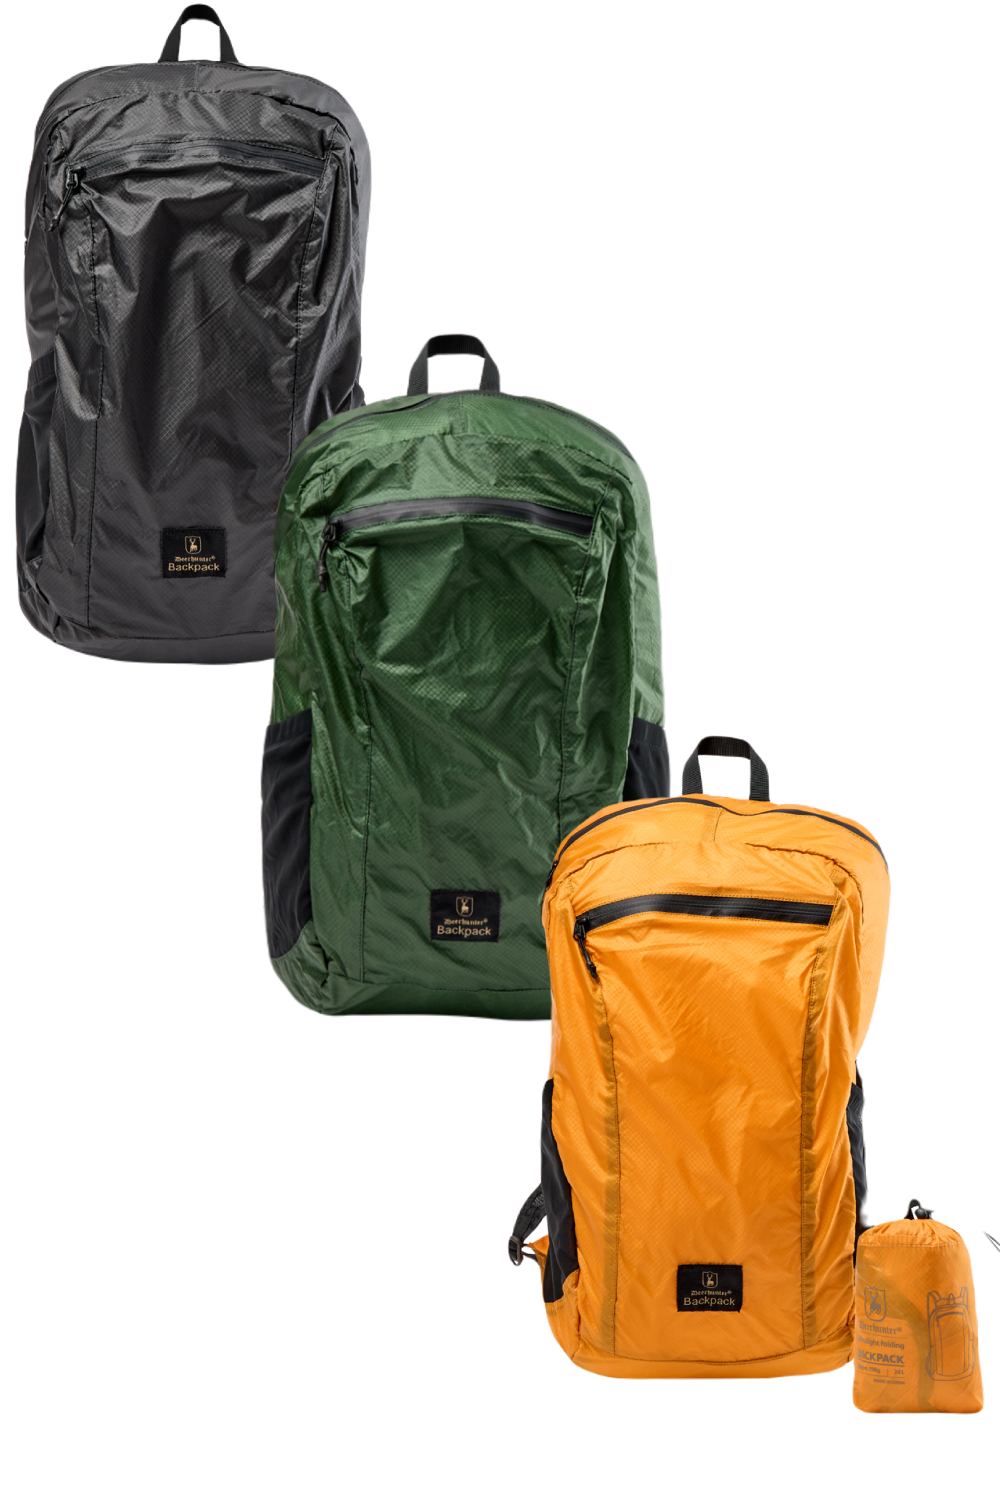 Deerhunter Packable Bag 24L In Green, Orange, Black